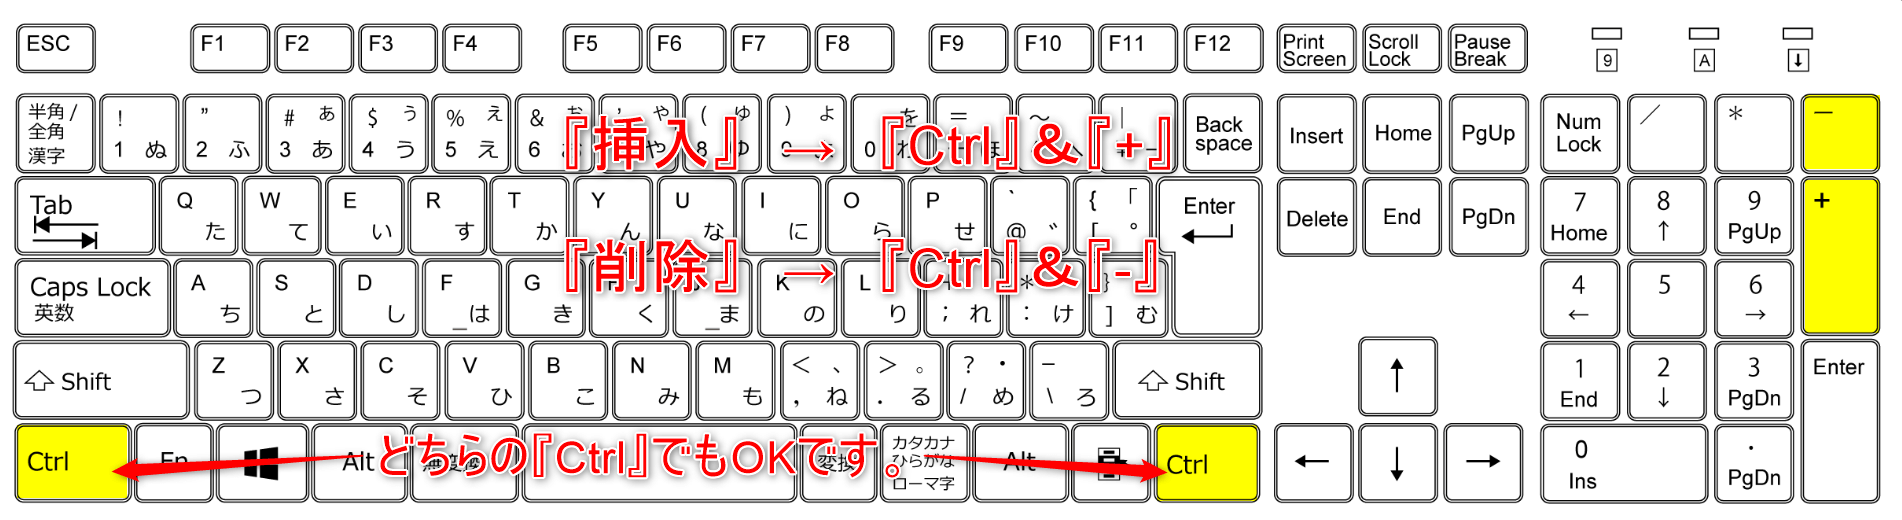 挿入と削除のショートカットをキーボードを使って解説している画像